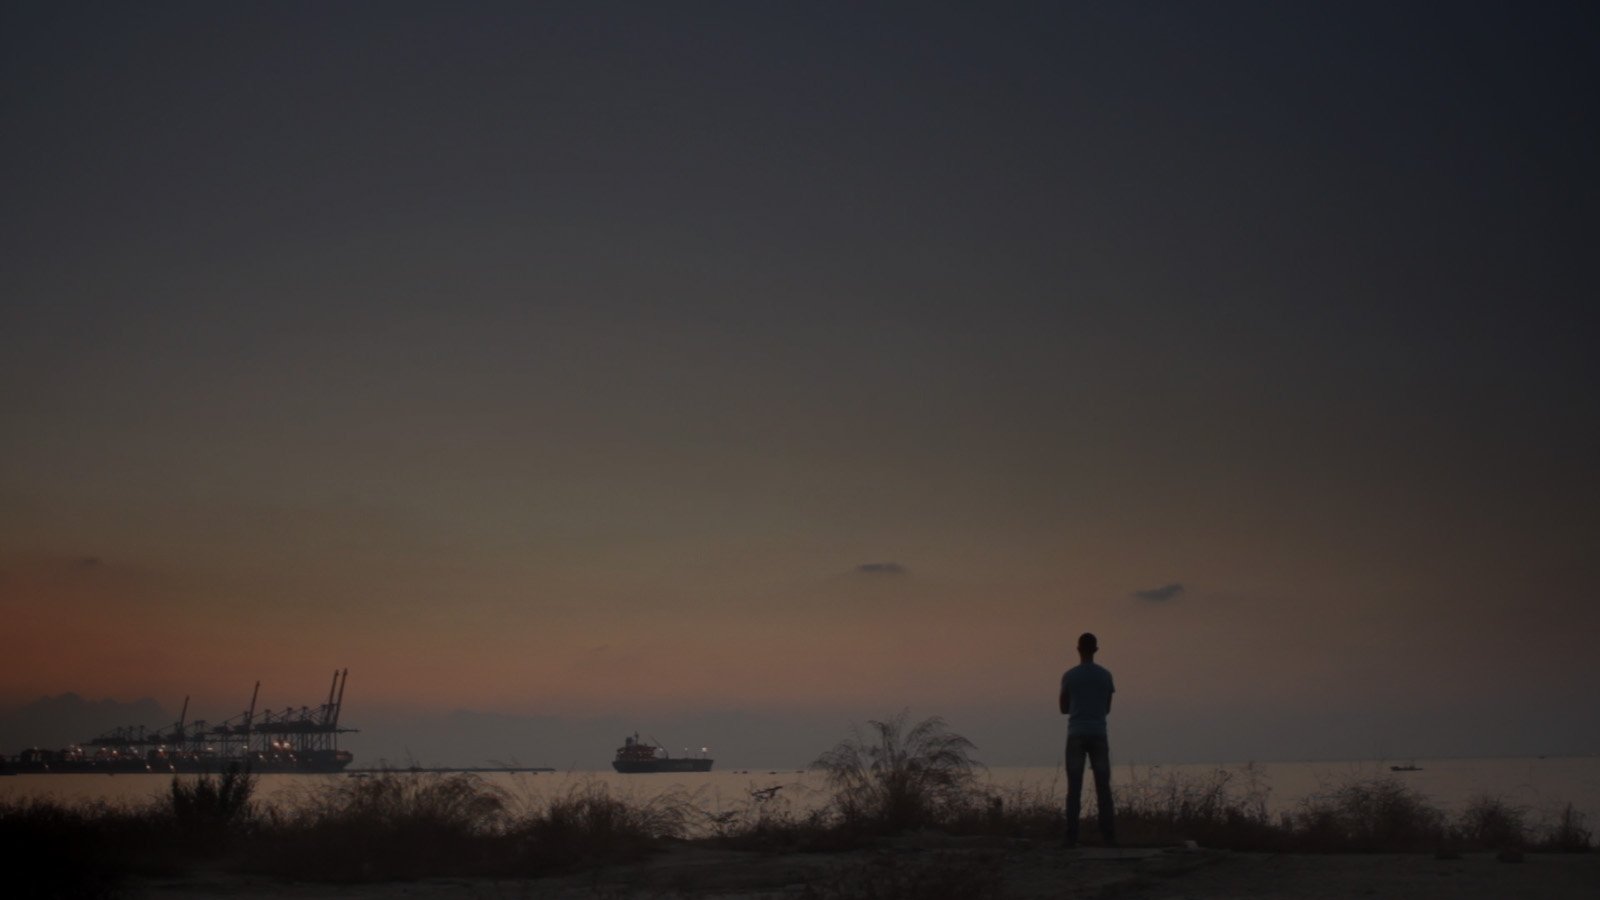 Paysage crépusculaire au bord de la mer, où apparaît la silhouette d'un homme se tenant debout, dos à la caméra et face à la mer.